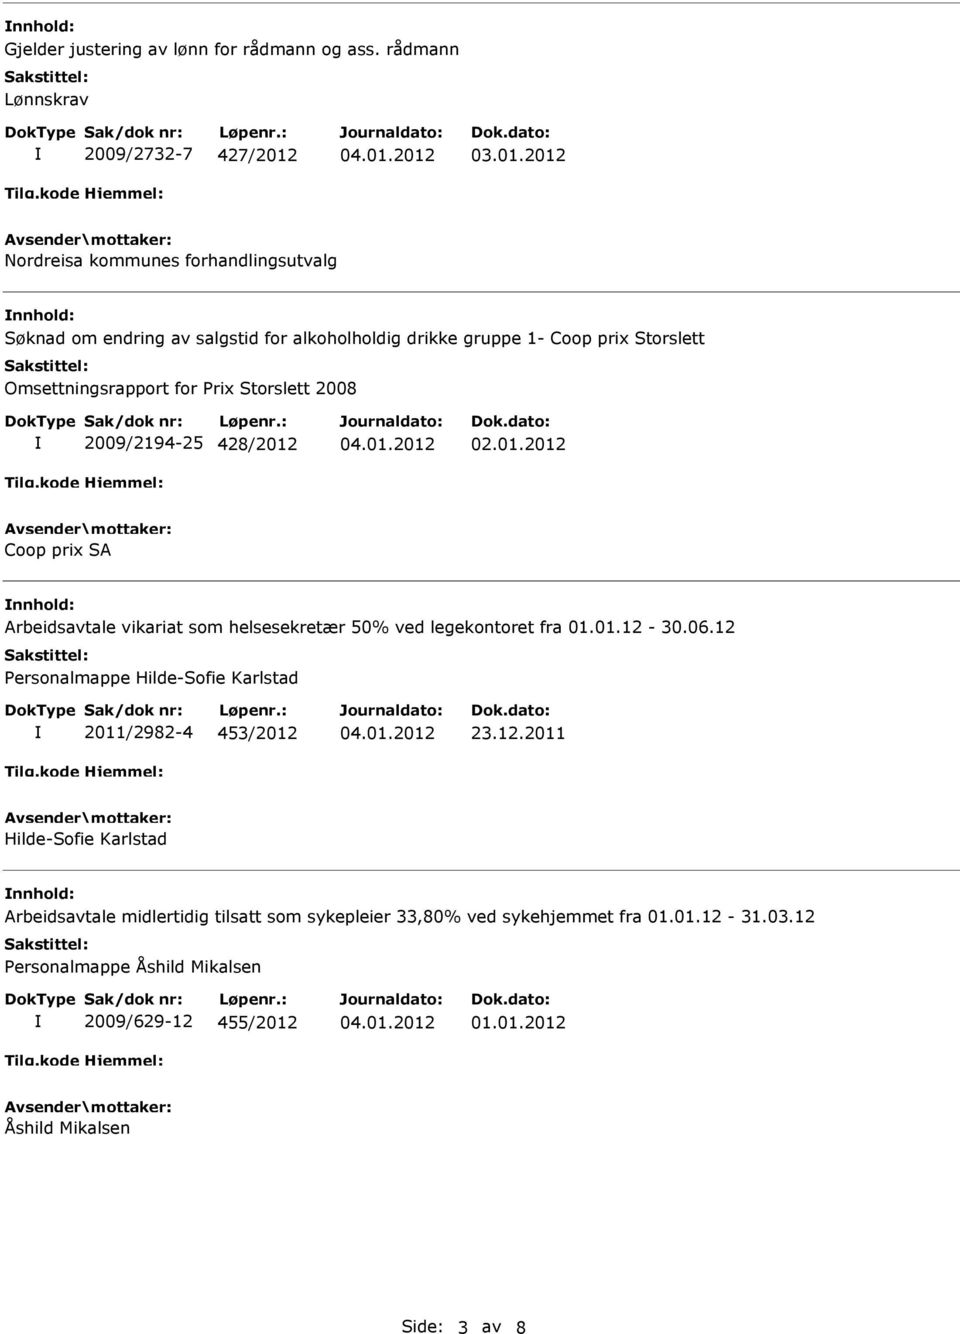 Omsettningsrapport for Prix Storslett 2008 2009/2194-25 428/2012 02.01.2012 Coop prix SA nnhold: Arbeidsavtale vikariat som helsesekretær 50% ved legekontoret fra 01.01.12-30.